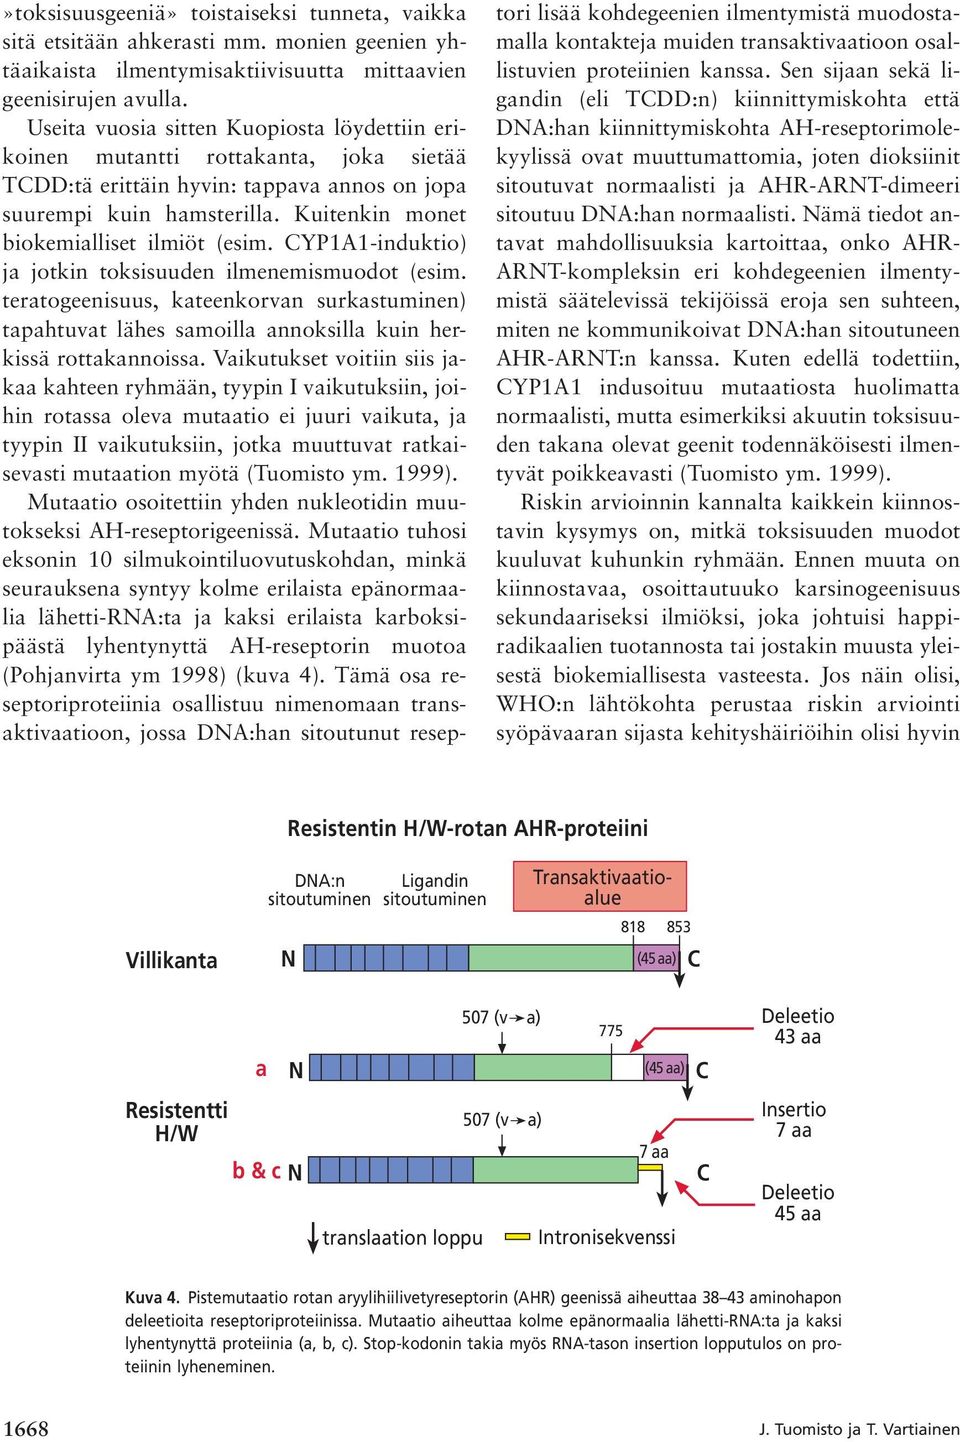 Kuitenkin monet biokemialliset ilmiöt (esim. CYP1A1-induktio) ja jotkin toksisuuden ilmenemismuodot (esim.